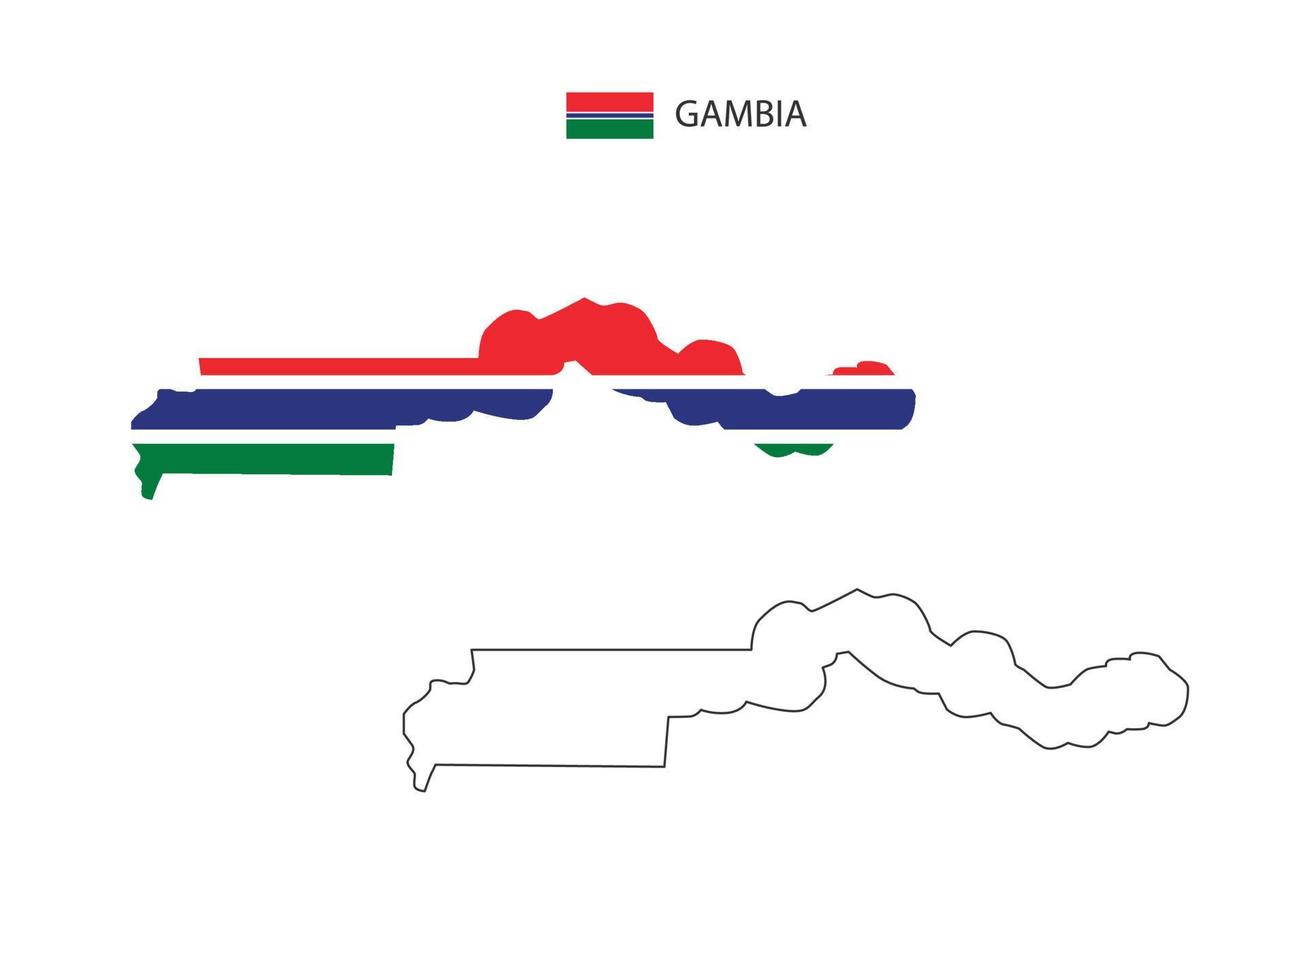 gambia-karte stadtvektor geteilt durch umriss-einfachheitsstil. haben 2 Versionen, eine schwarze Version mit dünner Linie und eine Version in der Farbe der Landesflagge. beide Karten waren auf dem weißen Hintergrund. vektor